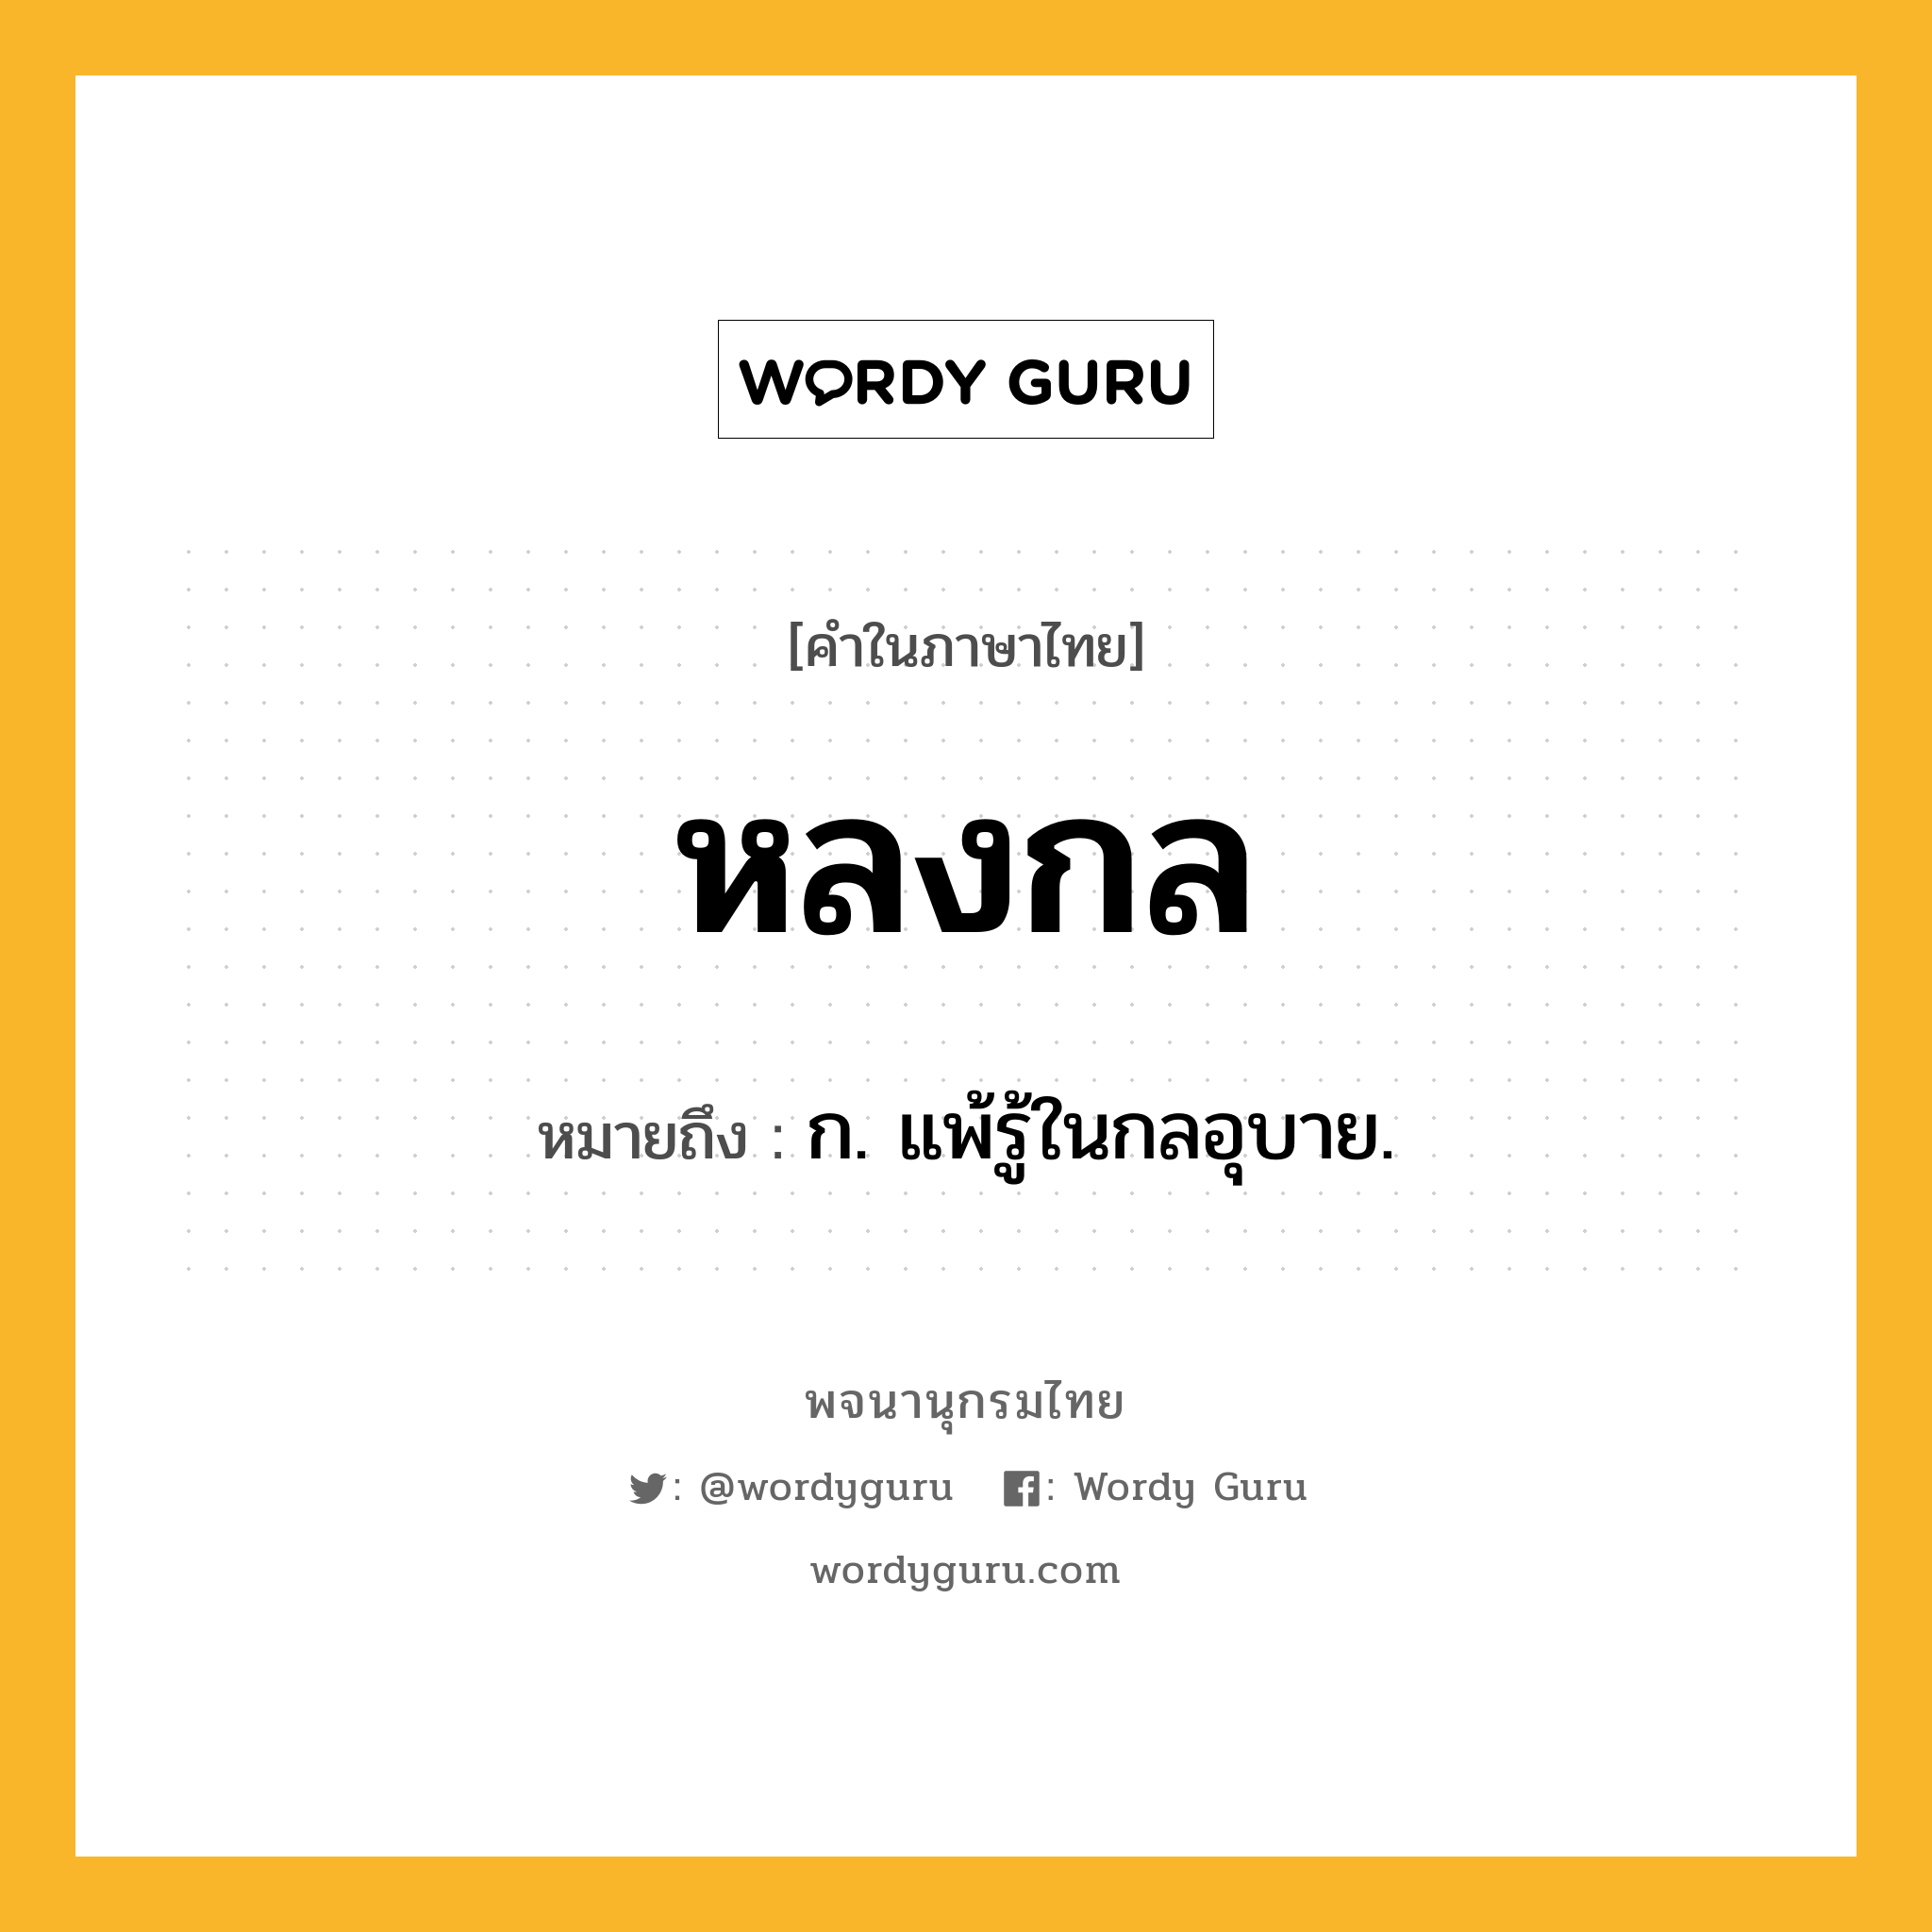 หลงกล หมายถึงอะไร?, คำในภาษาไทย หลงกล หมายถึง ก. แพ้รู้ในกลอุบาย.